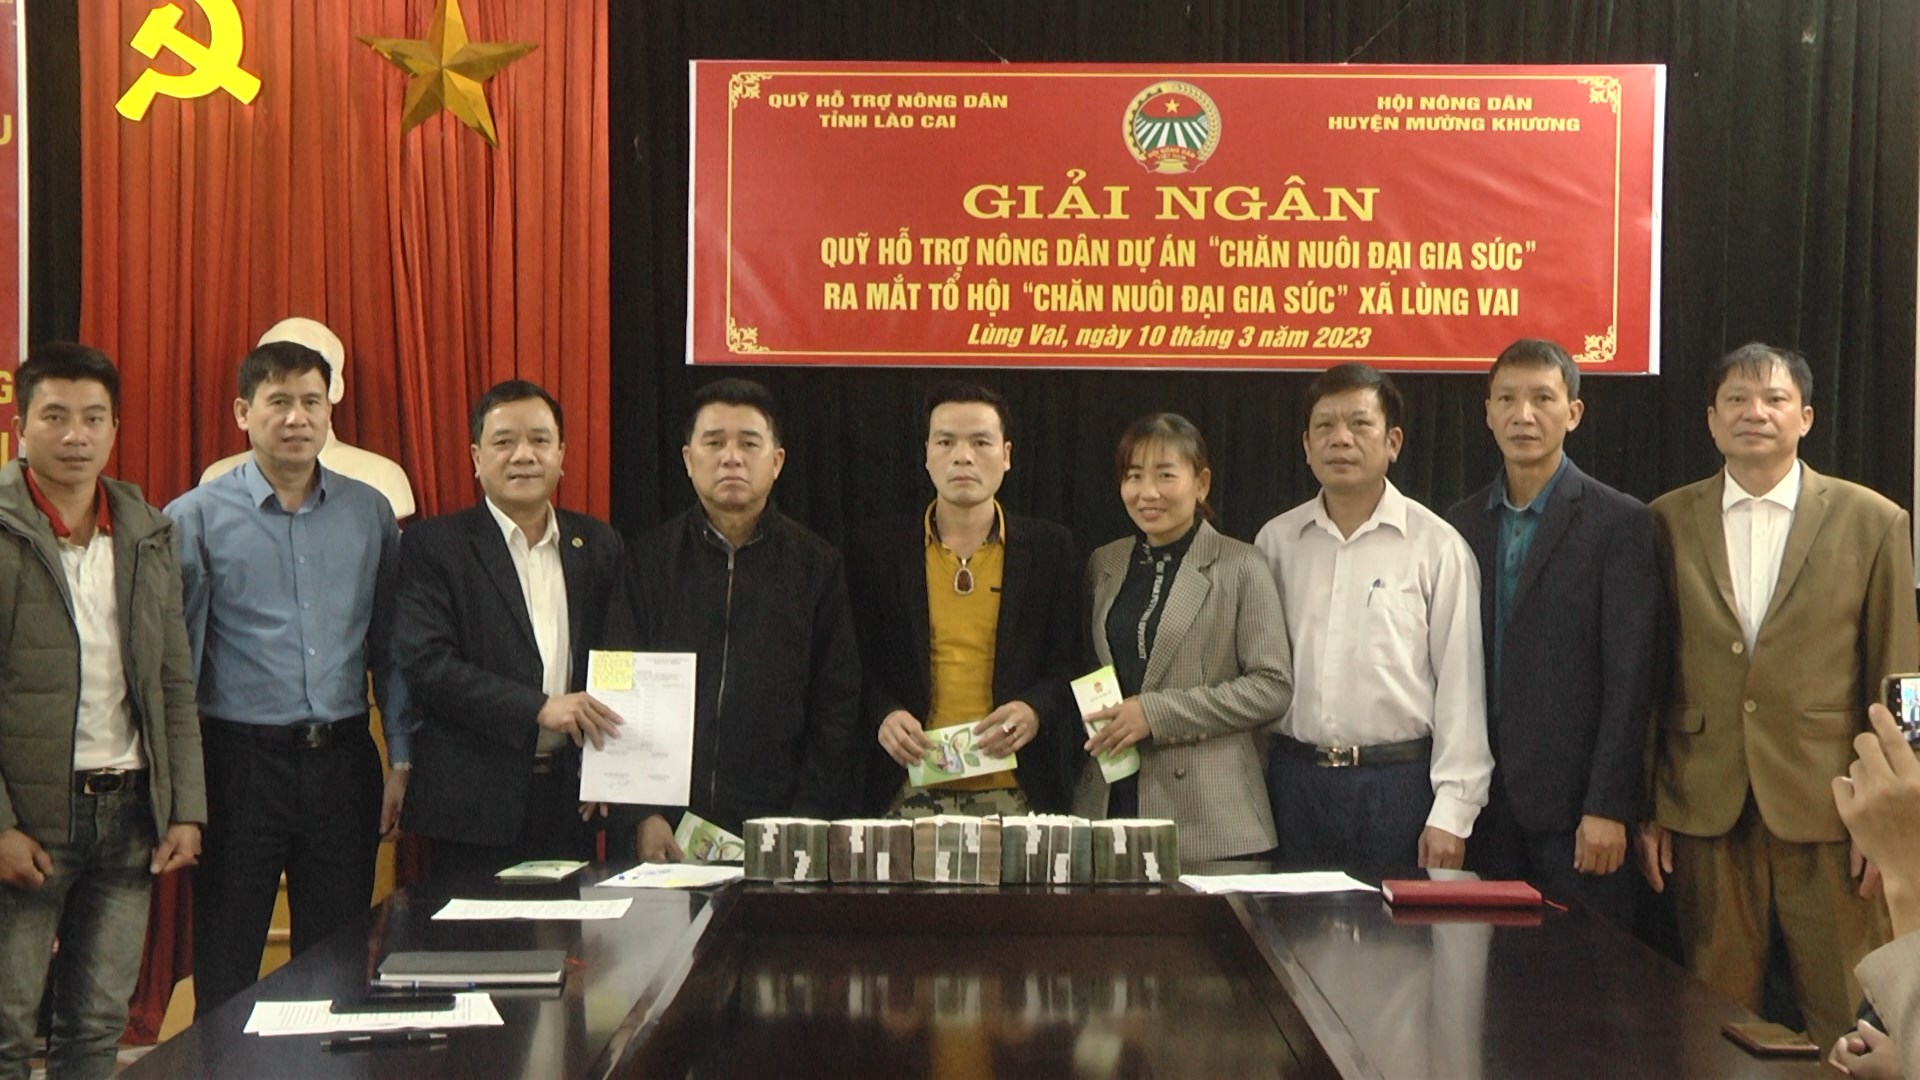 Quỹ Hỗ trợ nông dân giúp hội viên nông dân Lào Cai phát triển sản xuất - Ảnh 4.